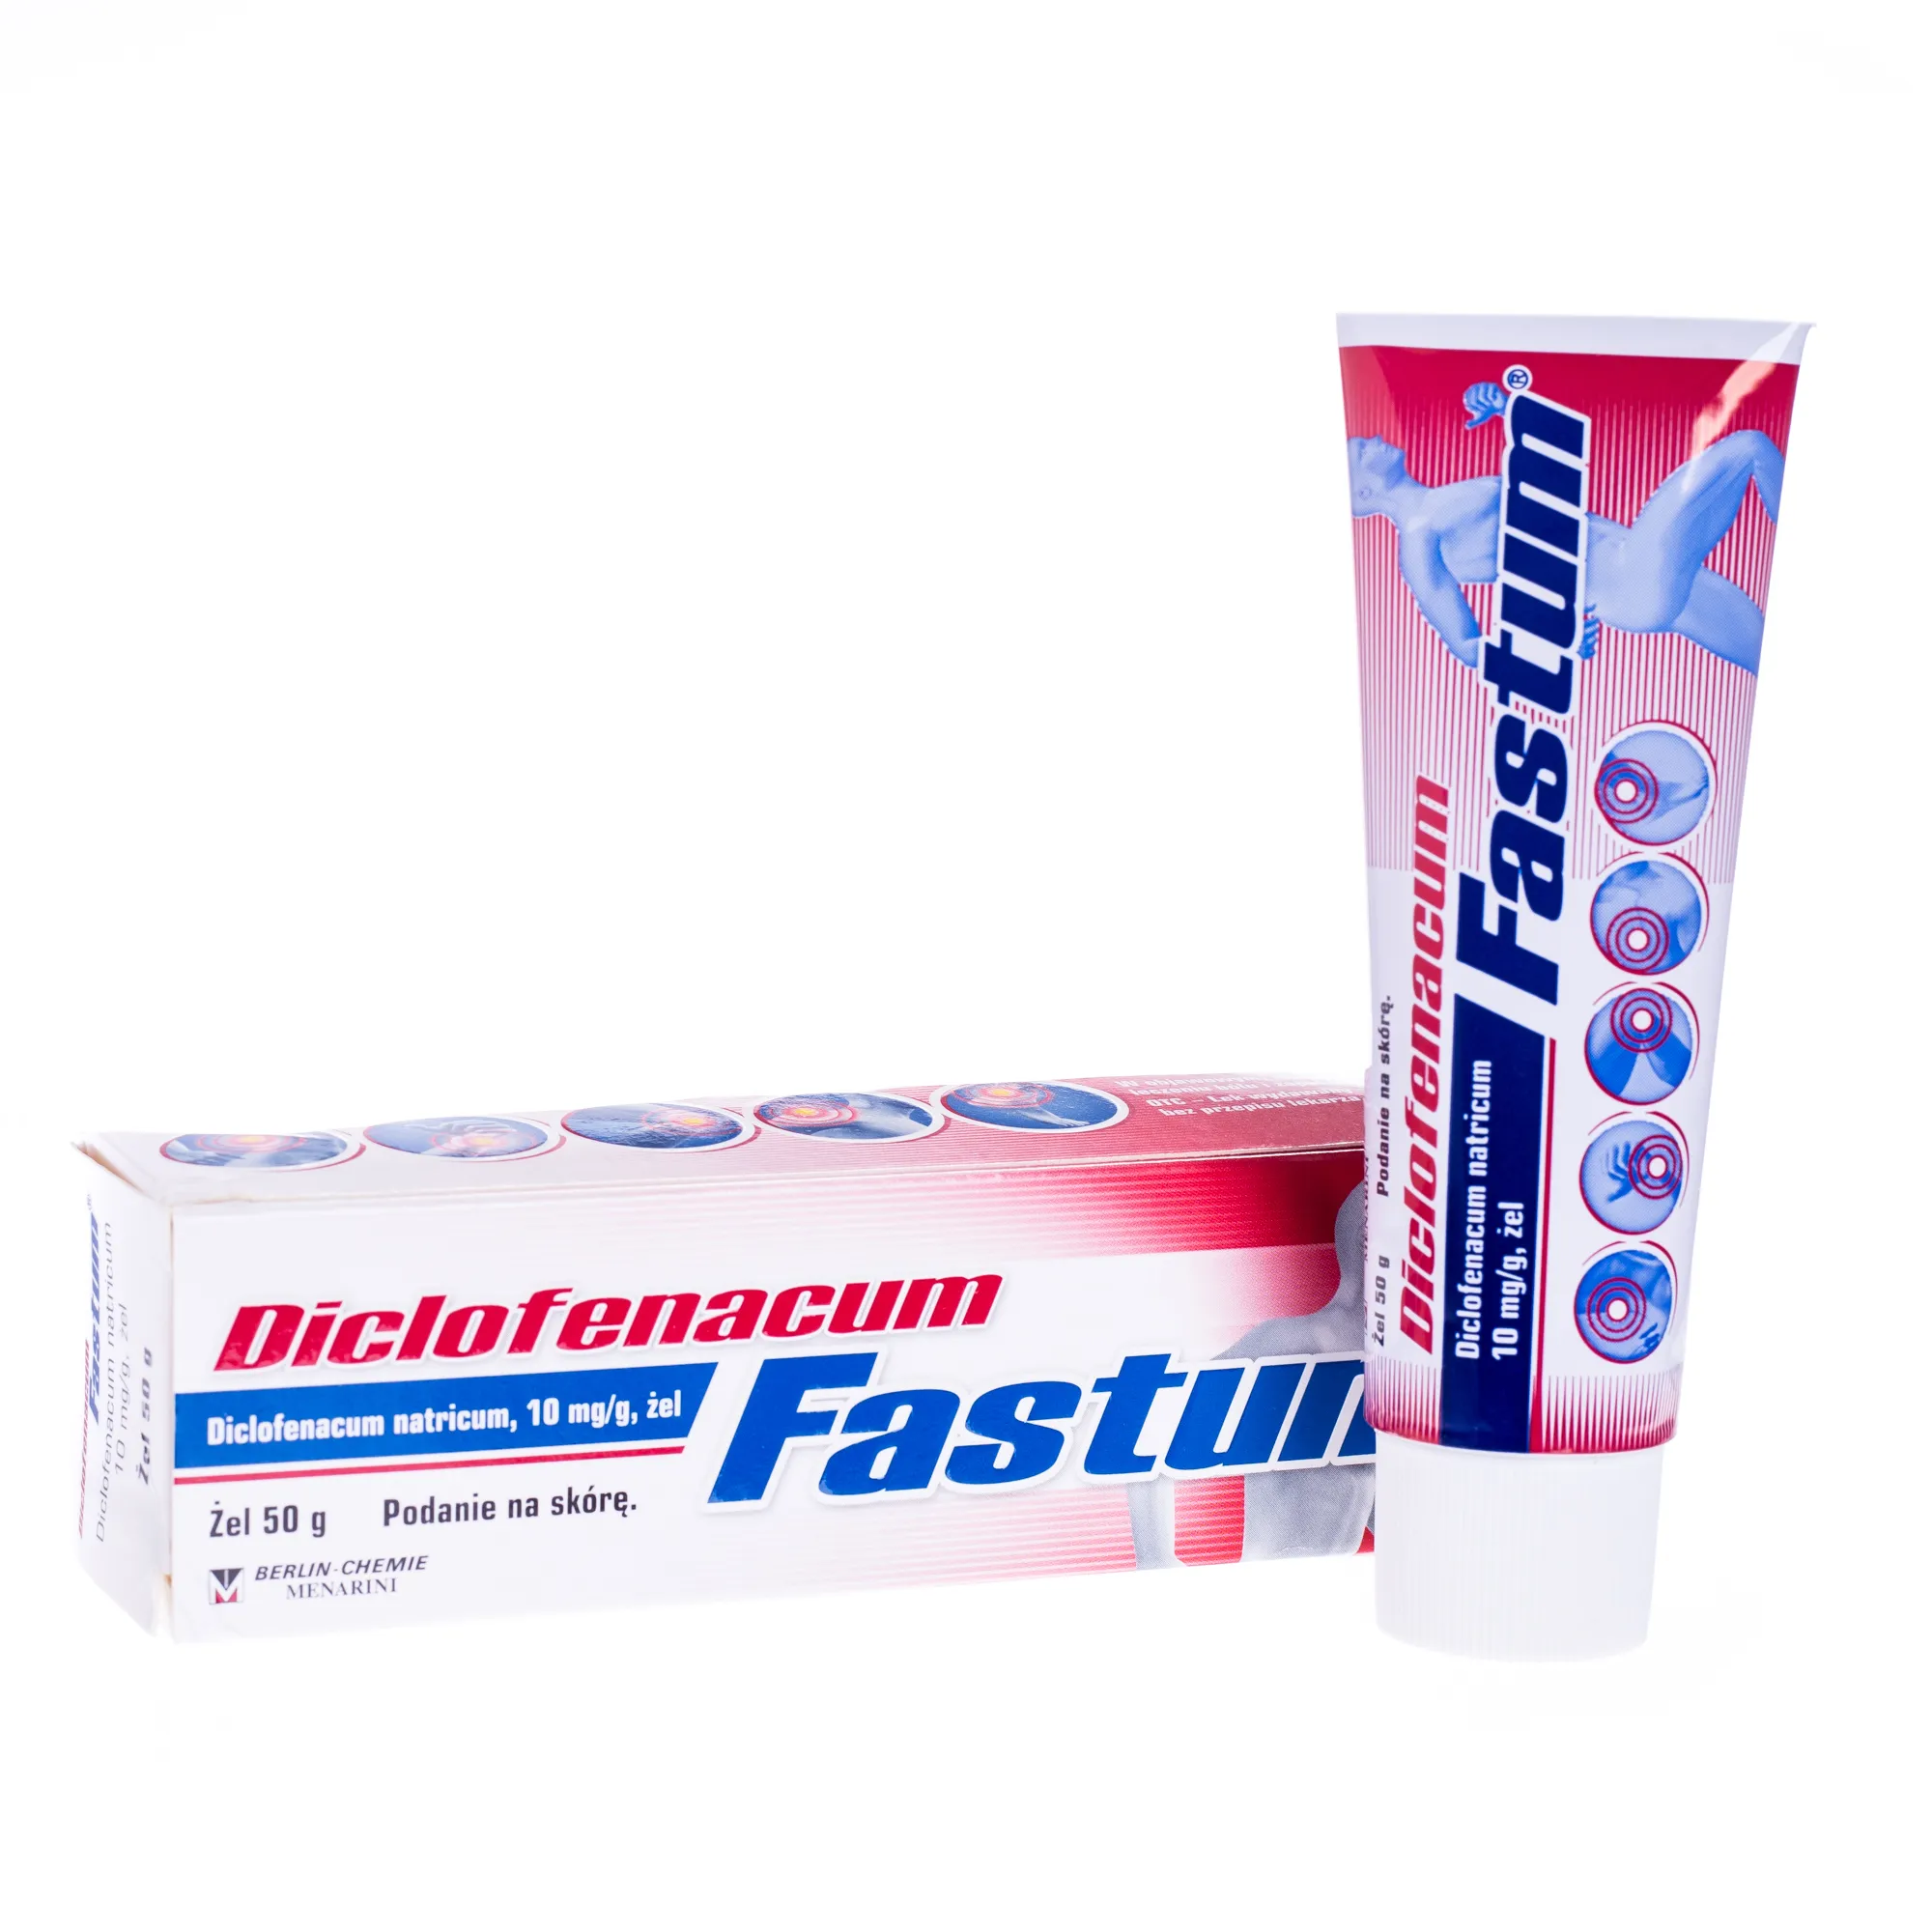 Diclofenacum Fastum (Viklaren), 10 mg/g, żel, 50 g